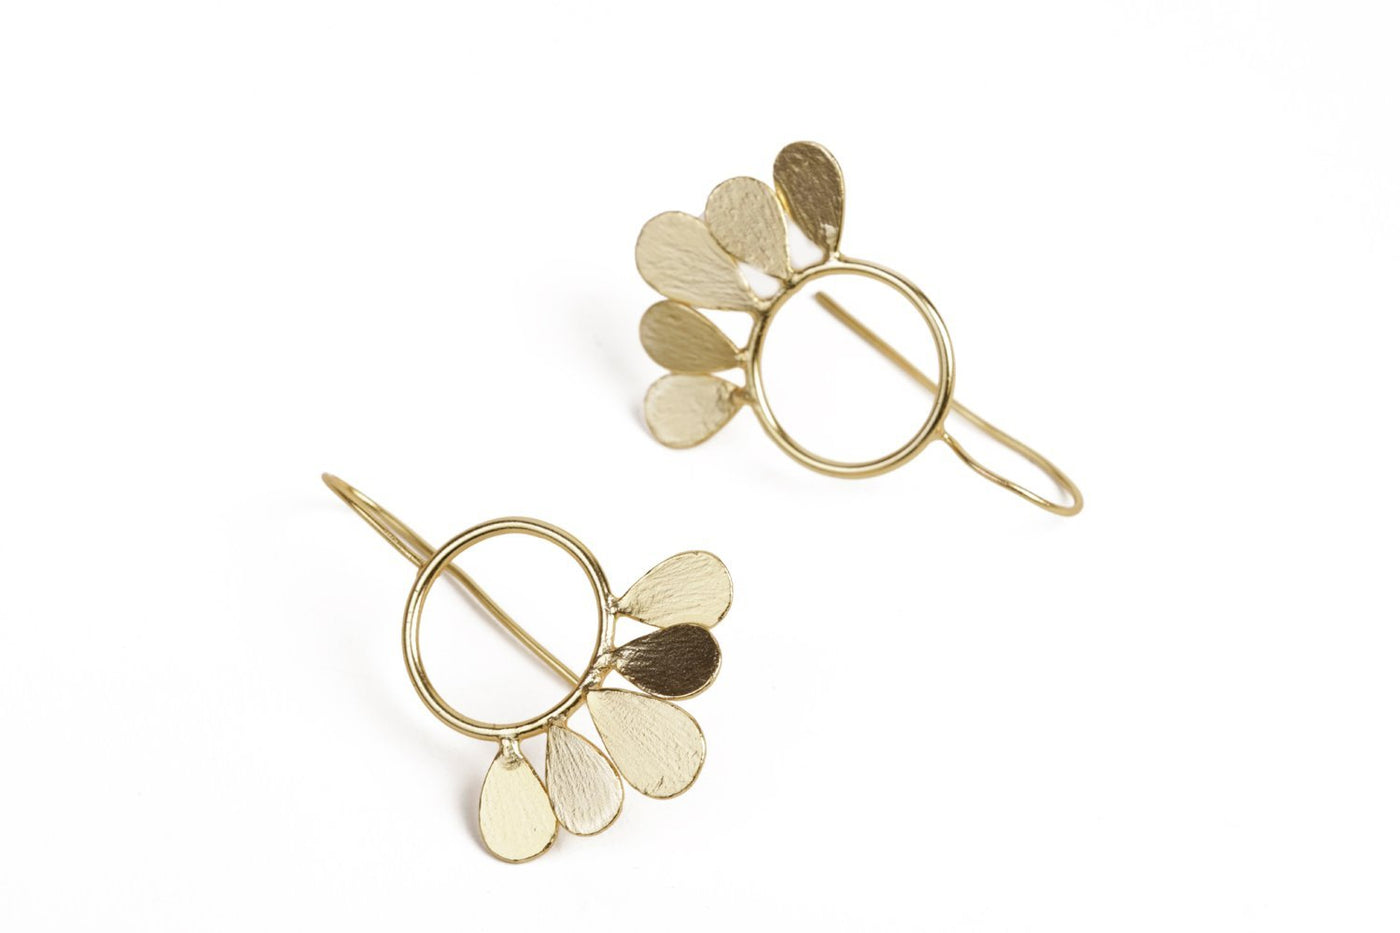 Flawless Floral Hoop Gold Earrings - Stilskii